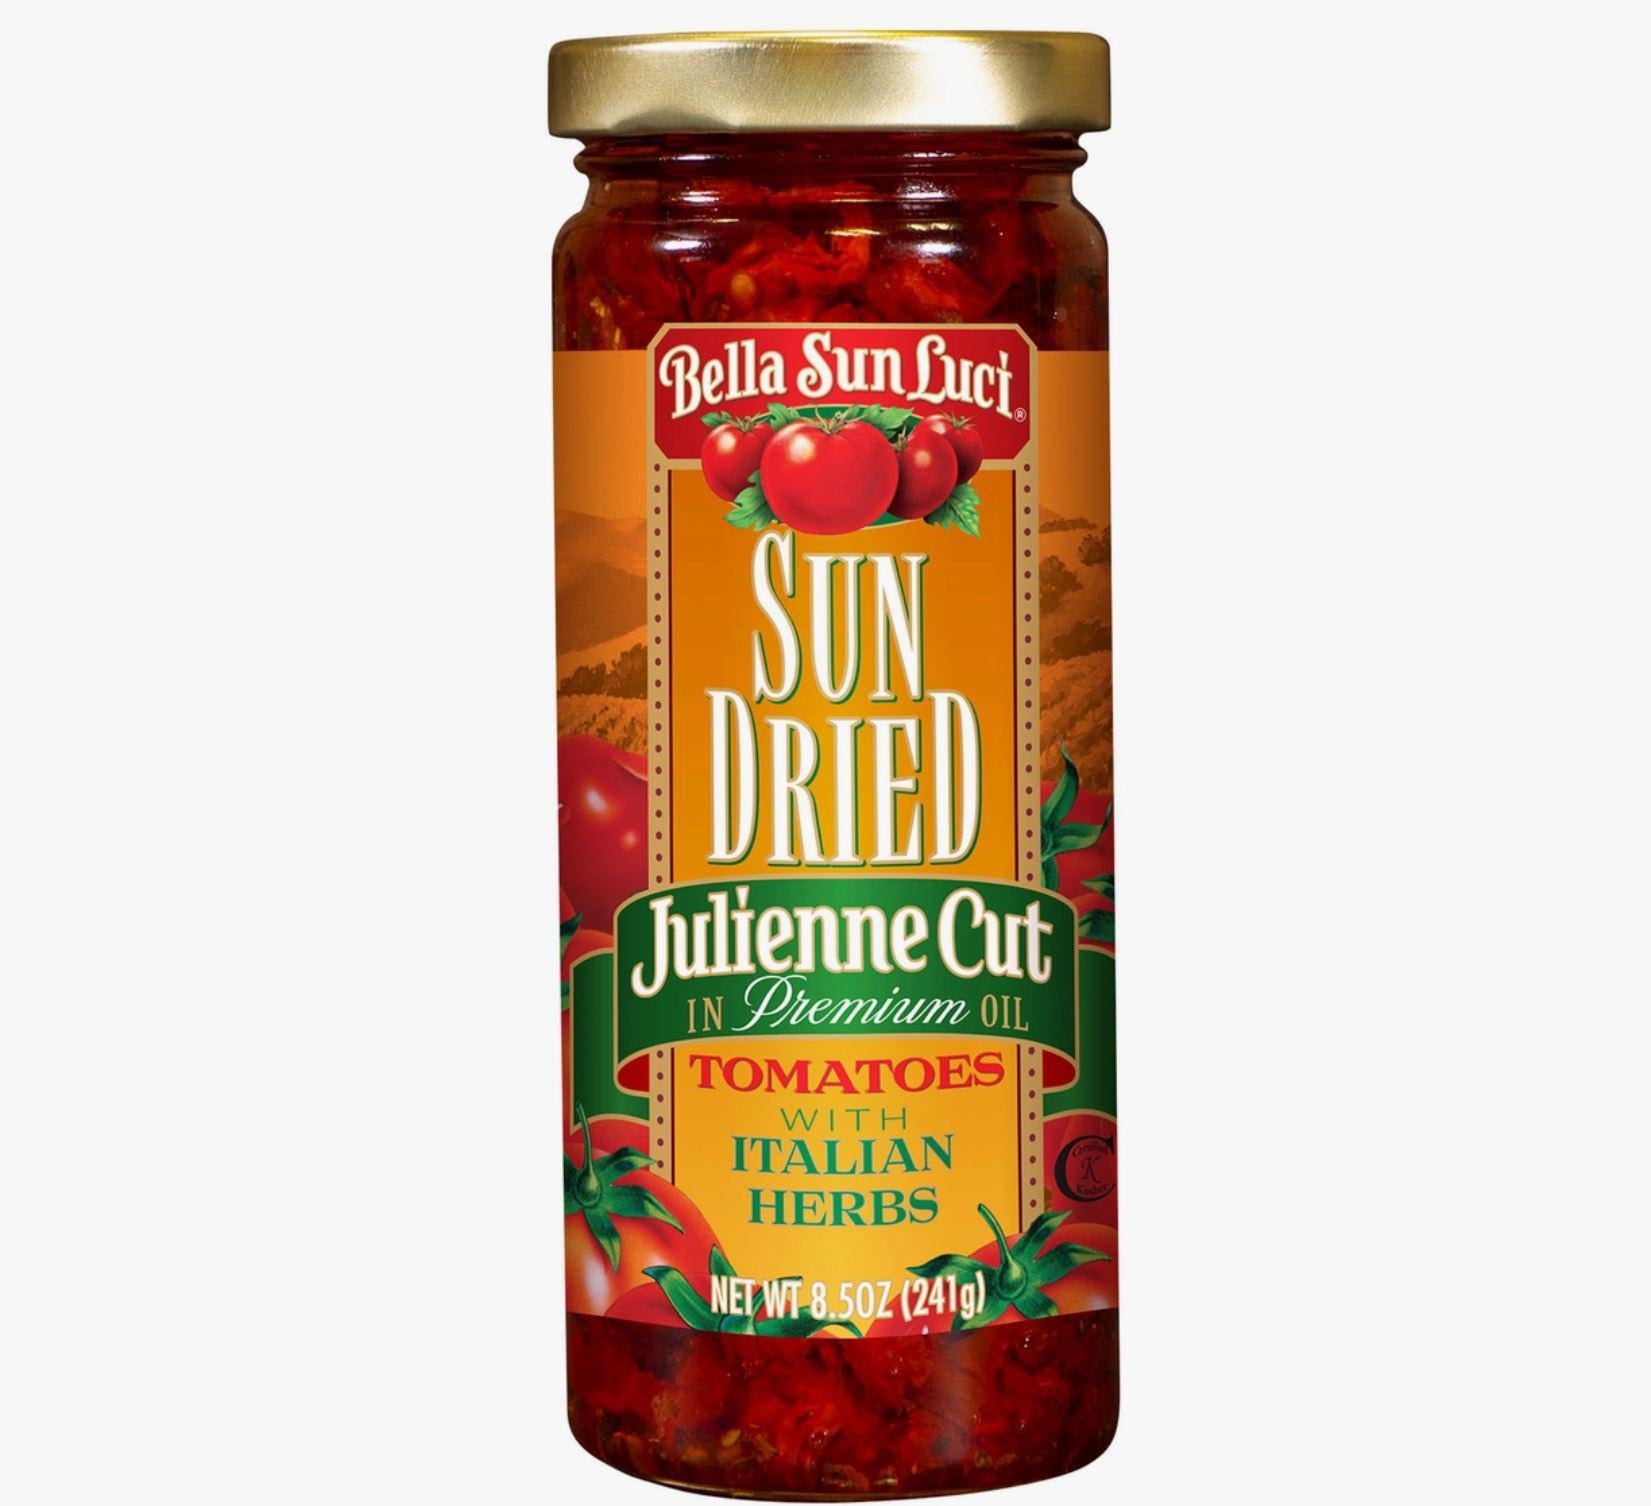 Bella Sun Luci Sun Dried Tomato Halves